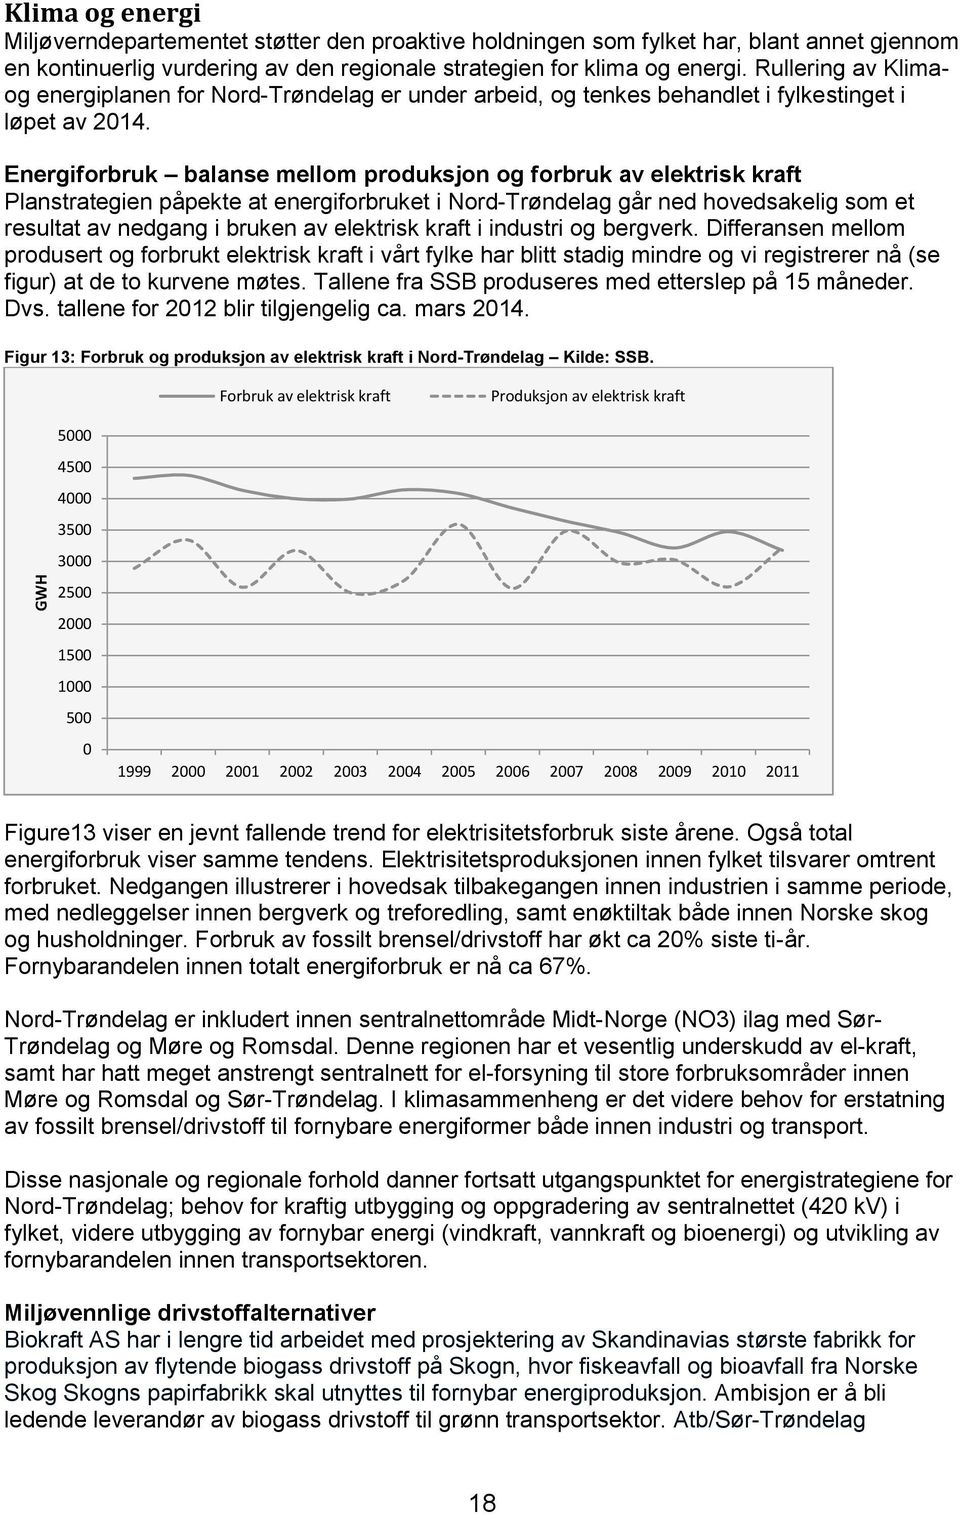 Energiforbruk balanse mellom produksjon og forbruk av elektrisk kraft Planstrategien påpekte at energiforbruket i Nord-Trøndelag går ned hovedsakelig som et resultat av nedgang i bruken av elektrisk